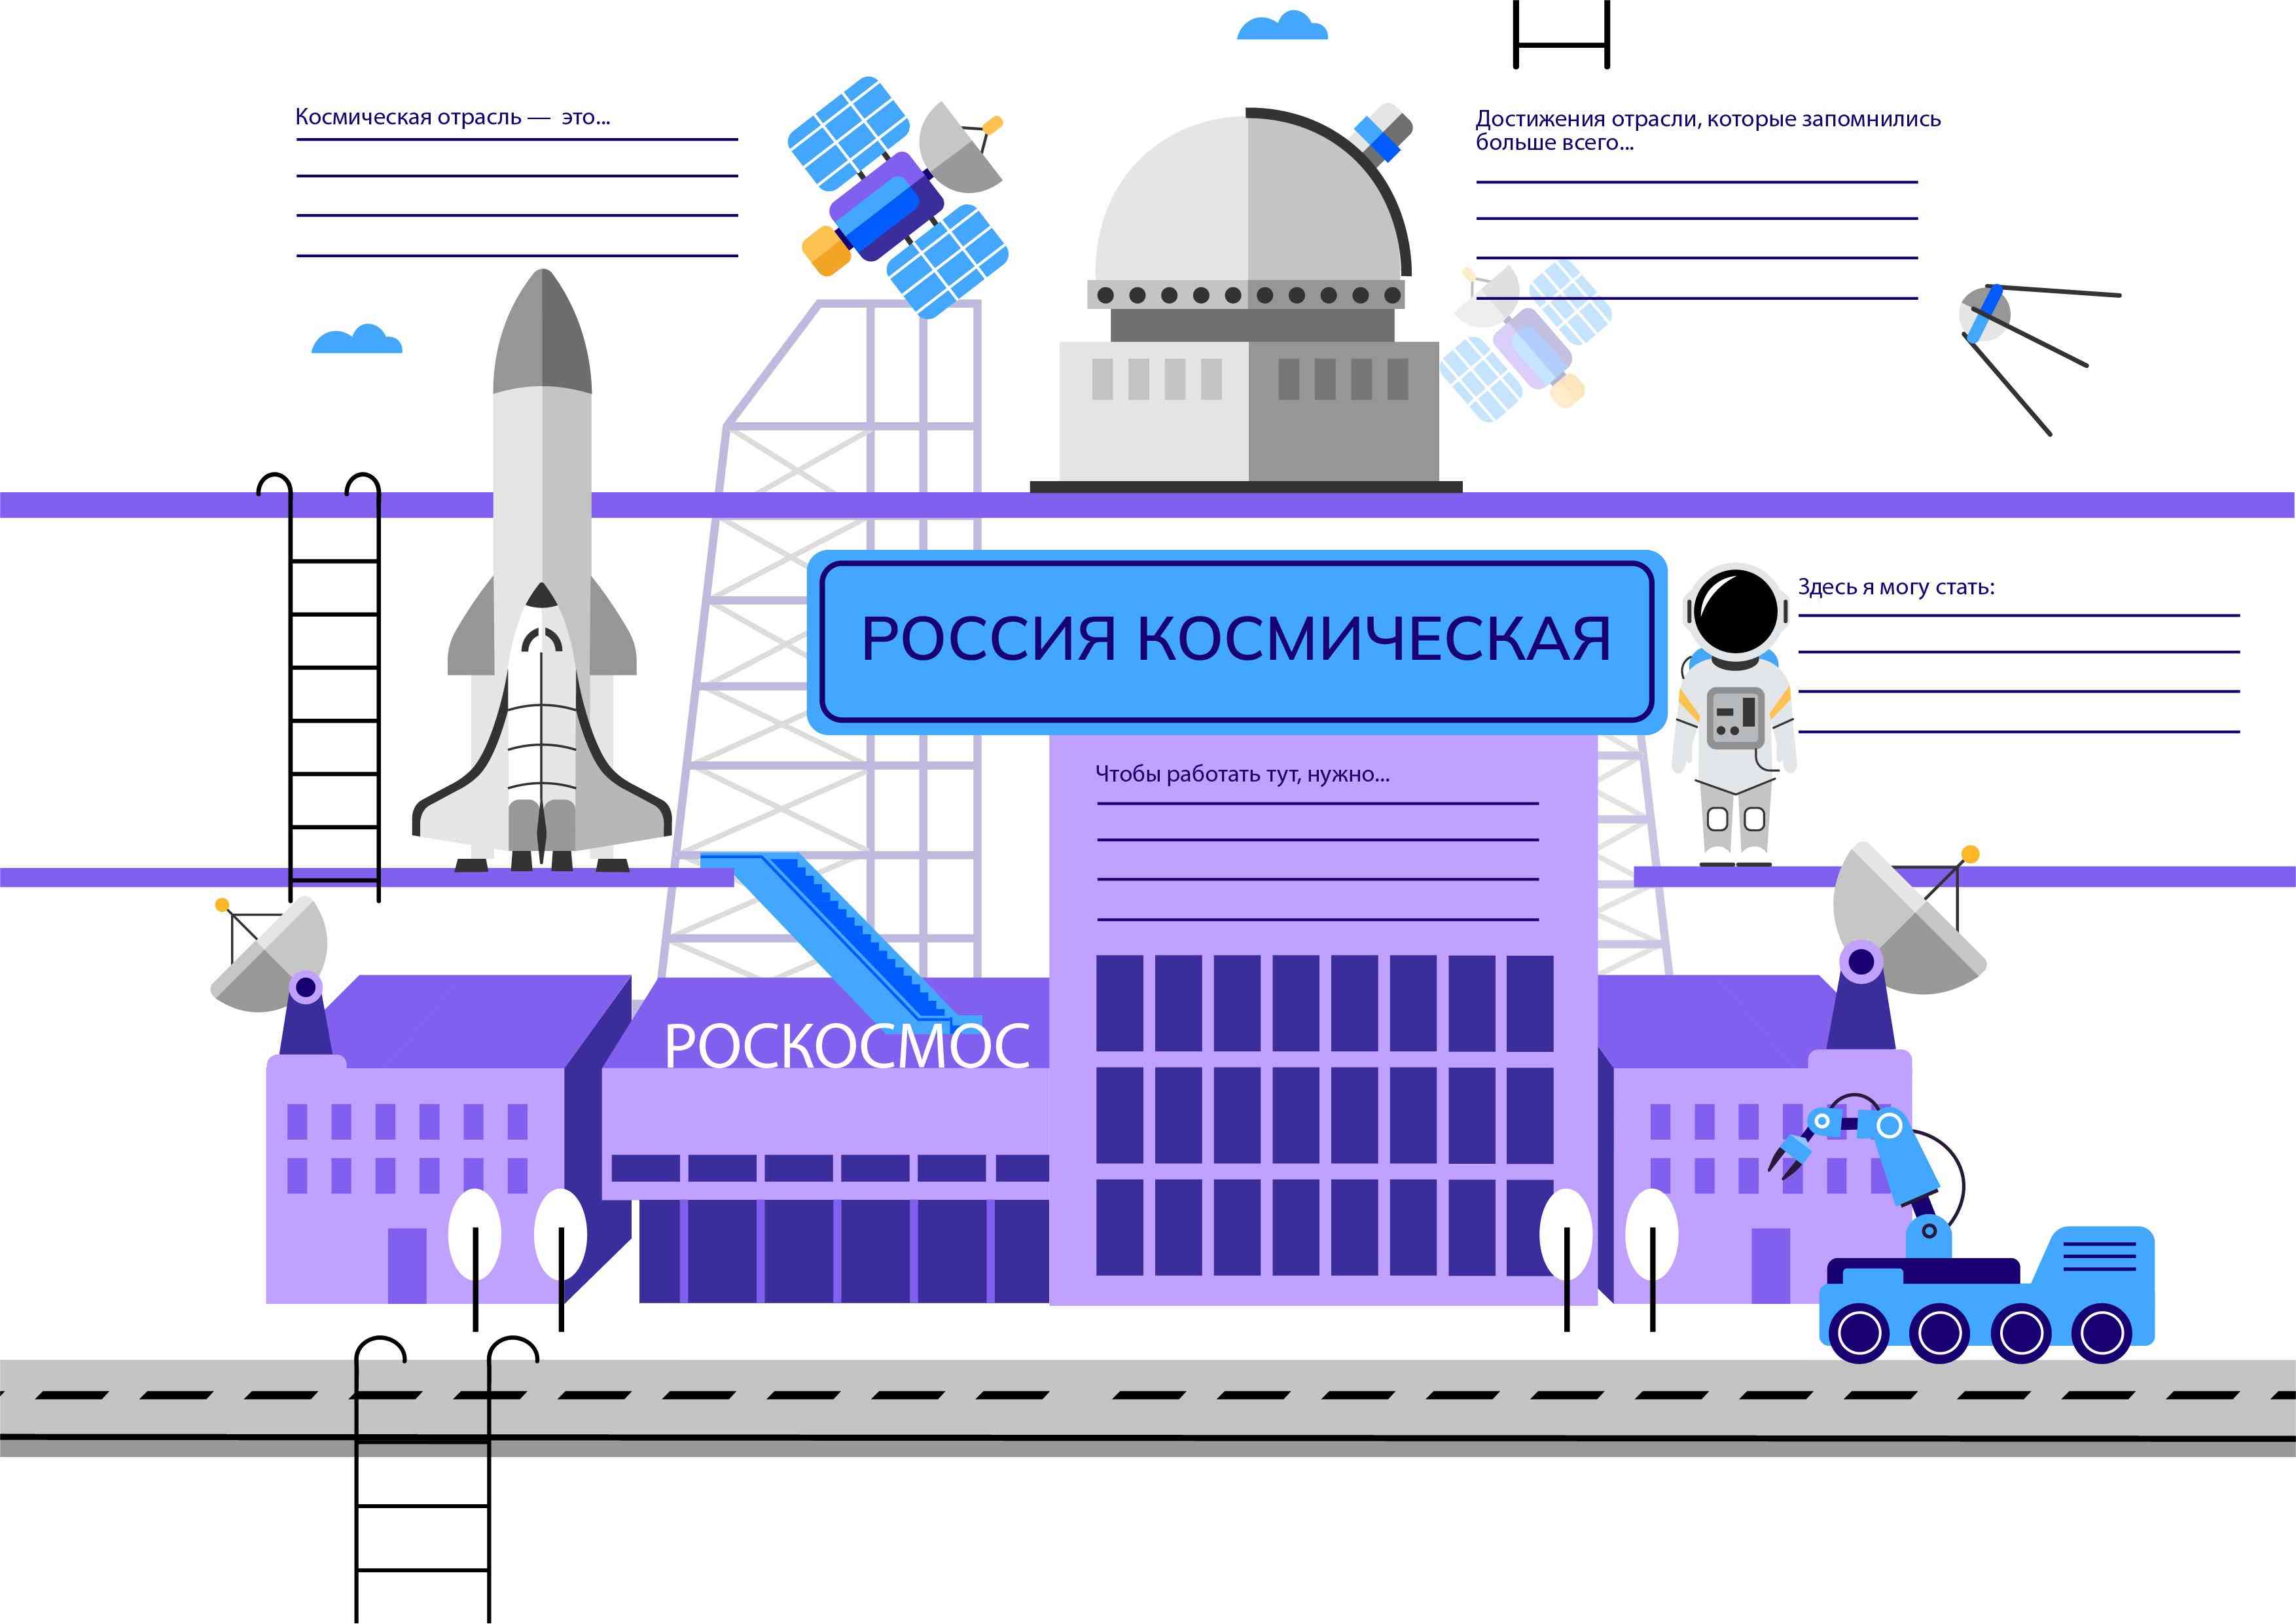 Профориентационное занятие «Россия космическая: узнаю о профессиях и достижениях в космической отрасли».